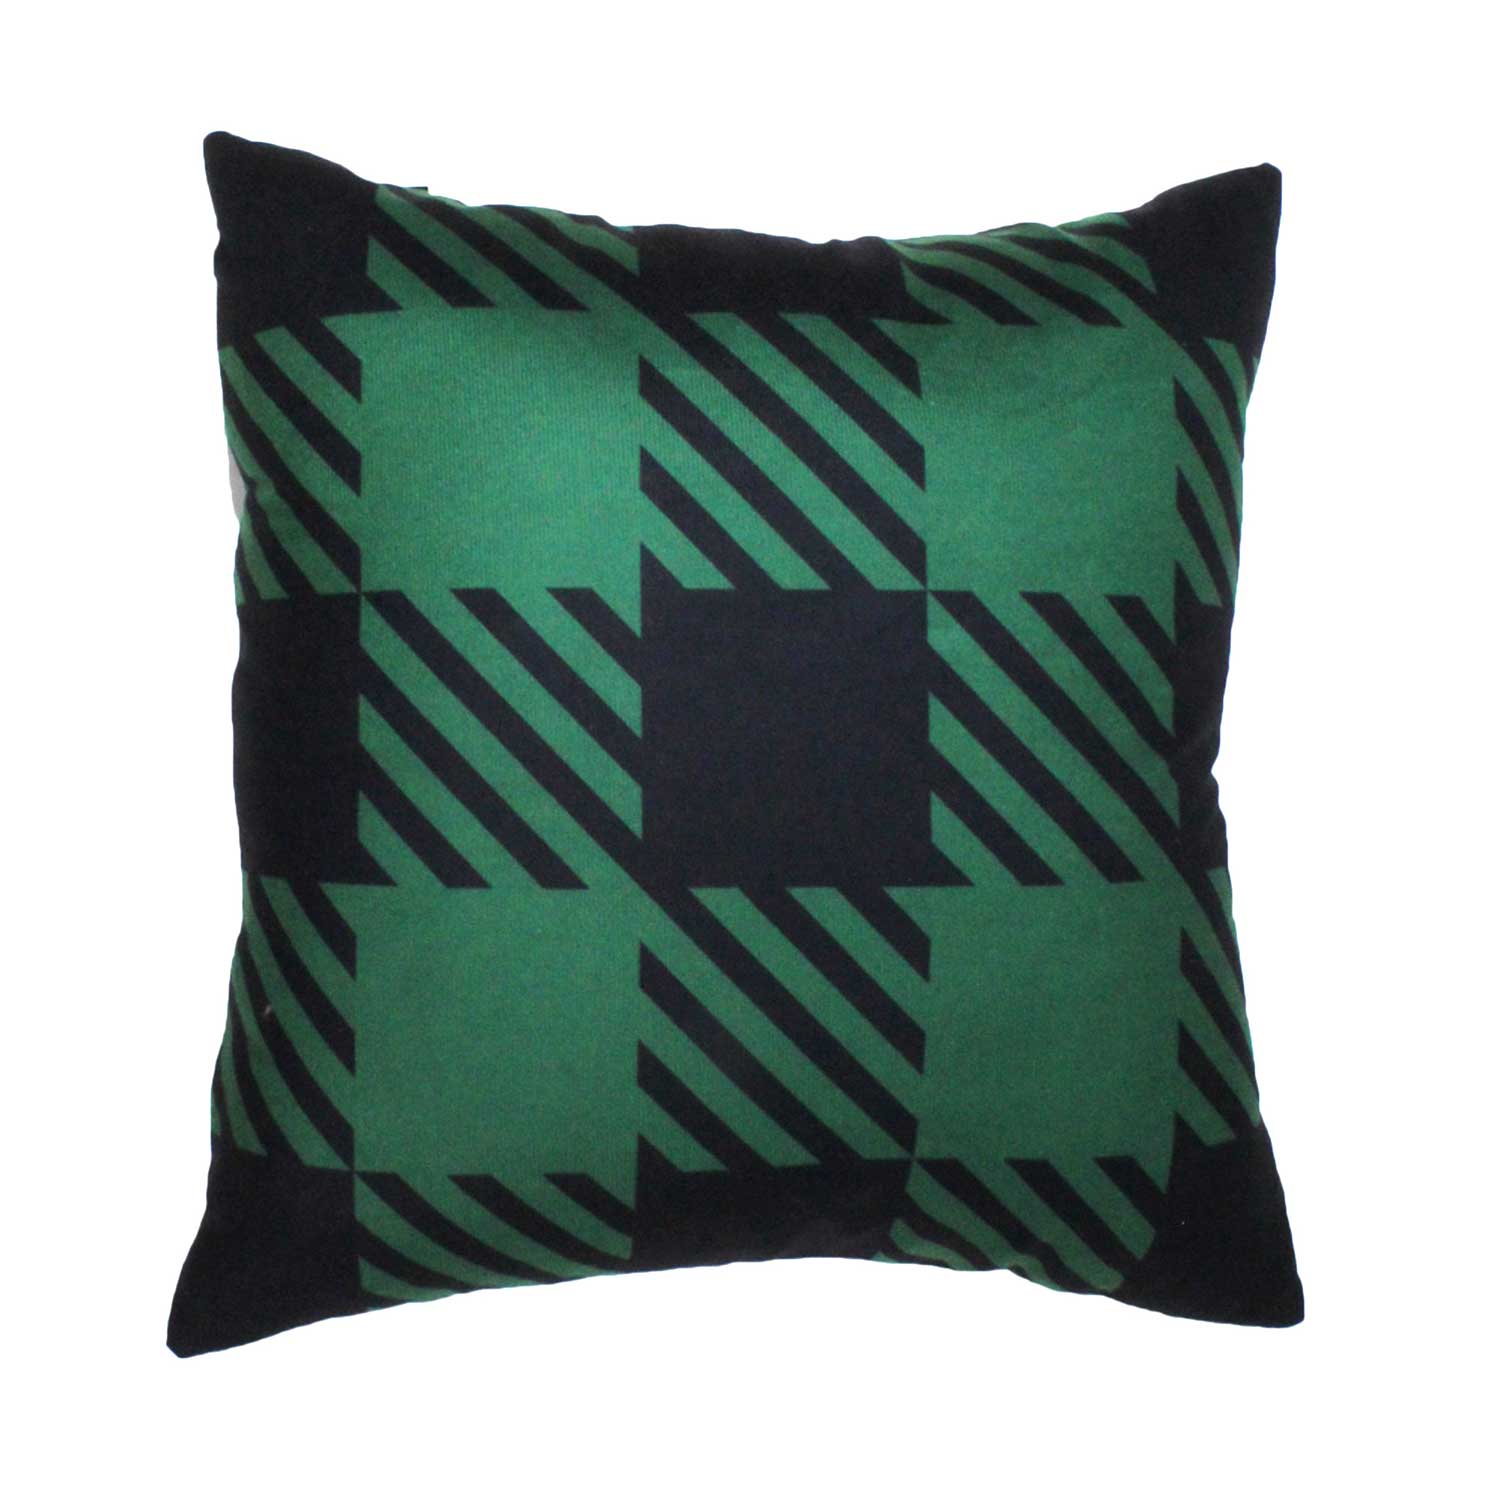 Green plaid decorative cushion, 17.5"x17.5"